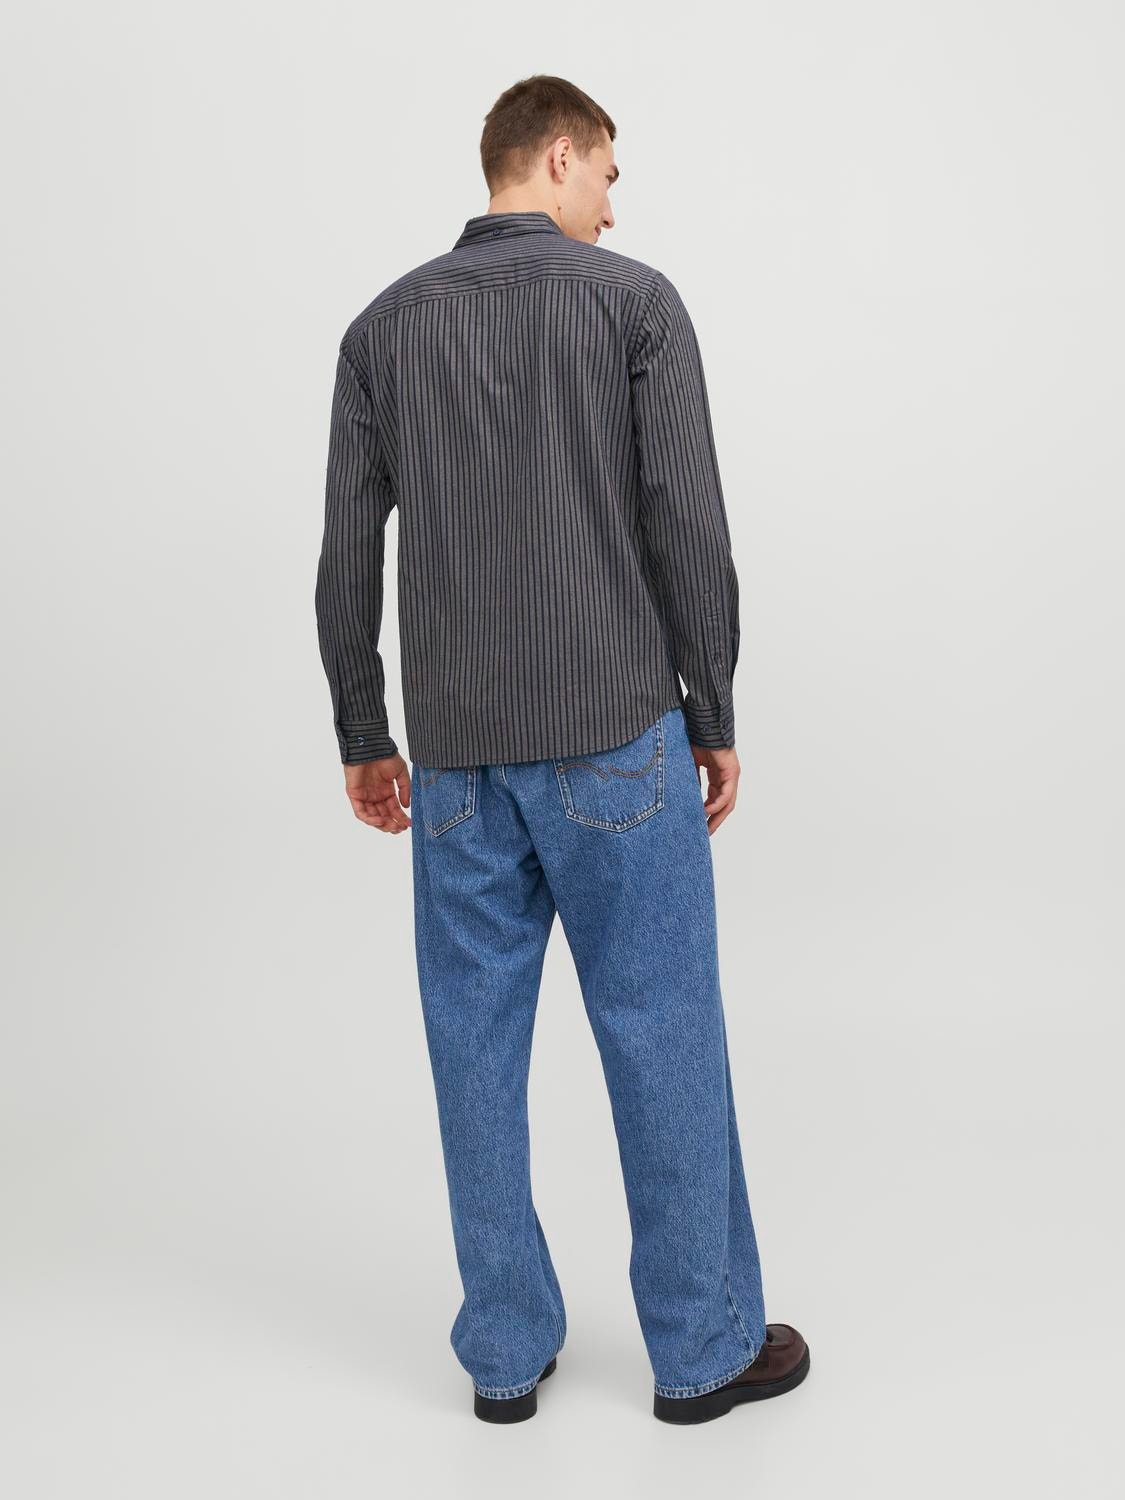 Jack & Jones Camisa formal Slim Fit -Brindle - 12192150